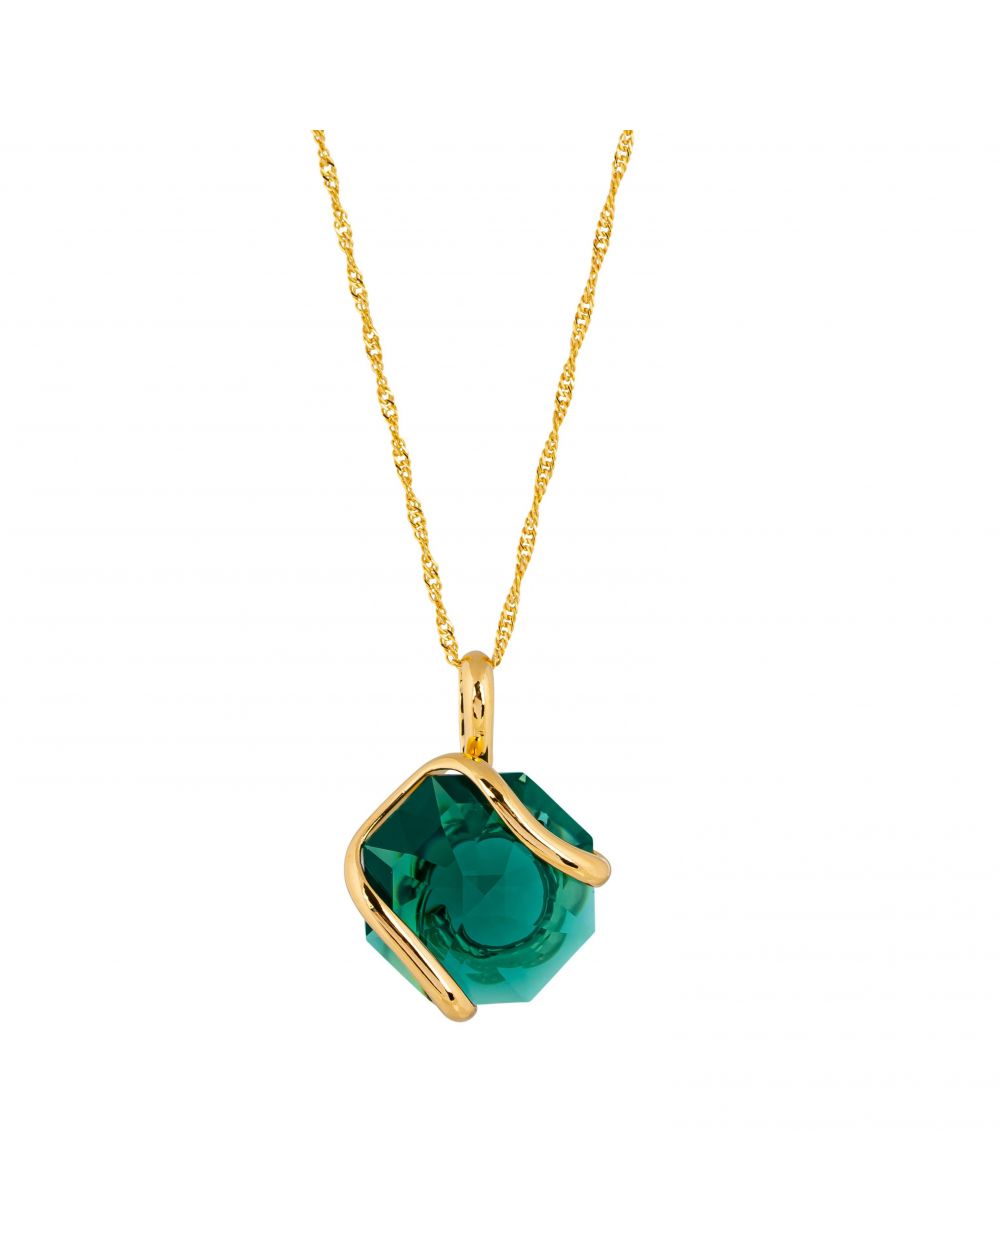 Collier Andrea Marazzini - Cristal Swarovski Emerald